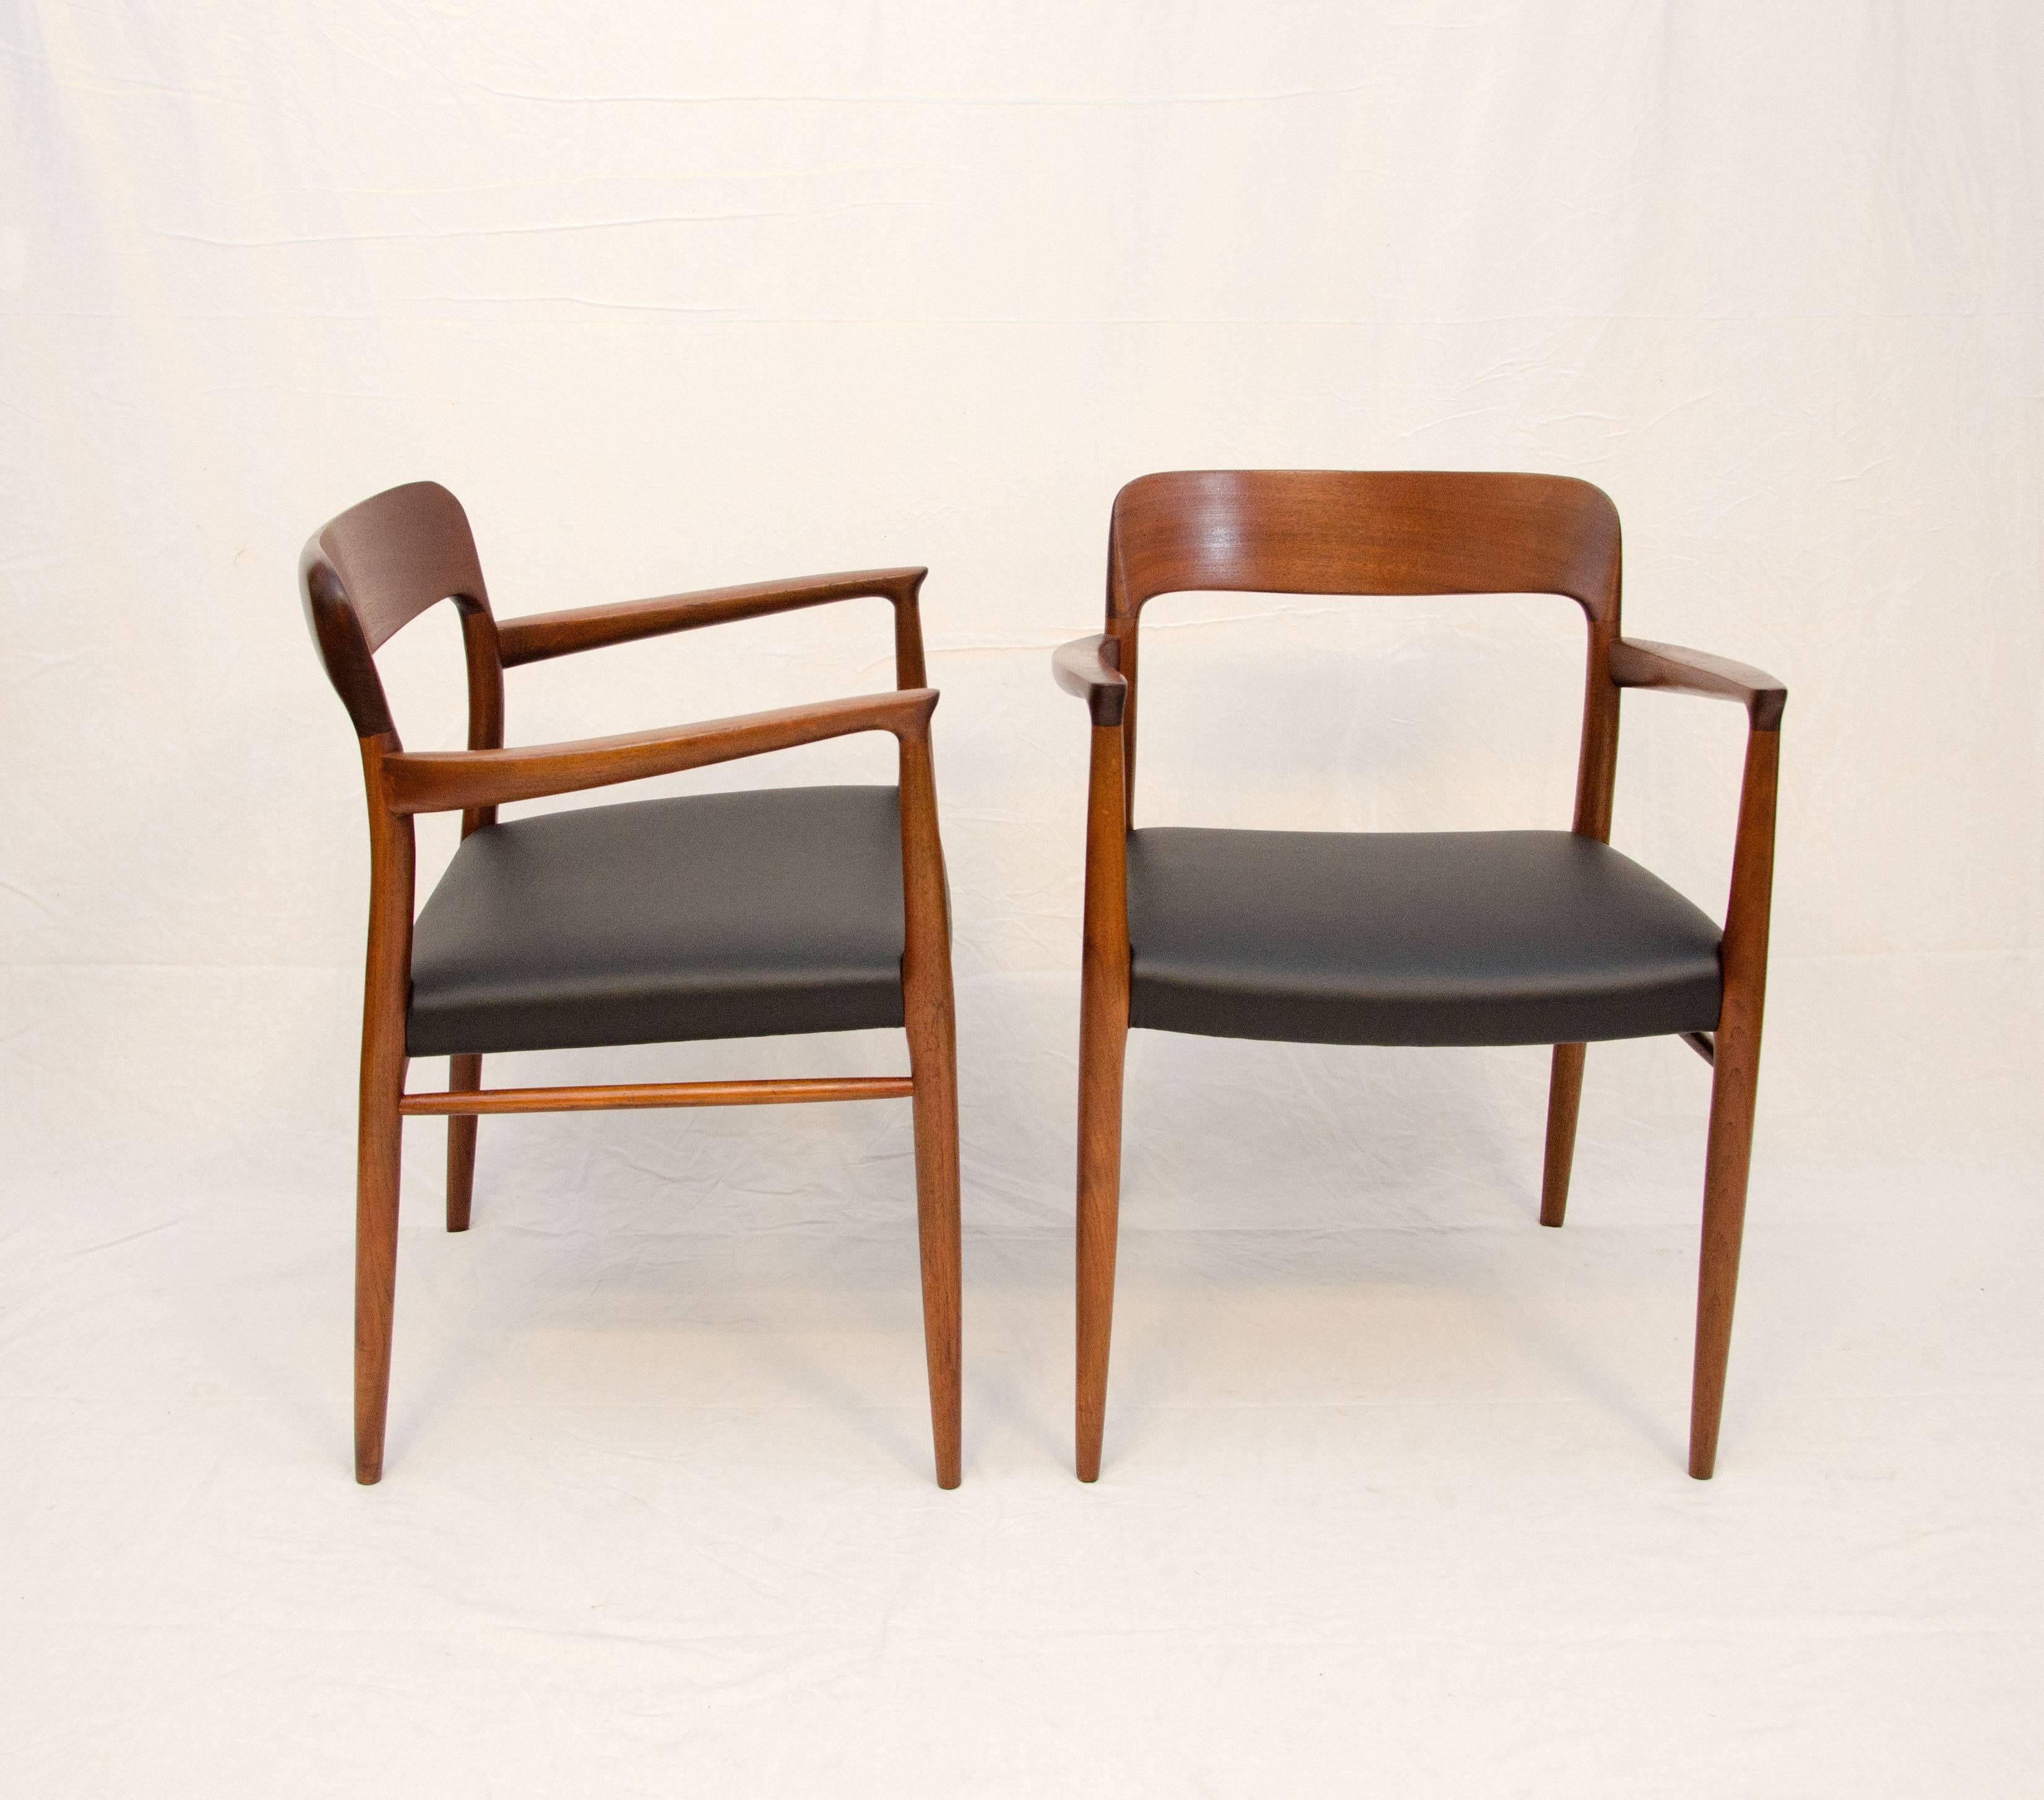 20th Century Set of 12 Danish Teak Dining Chairs by N. O. Møller for J. L. Møller Mobelfabrik